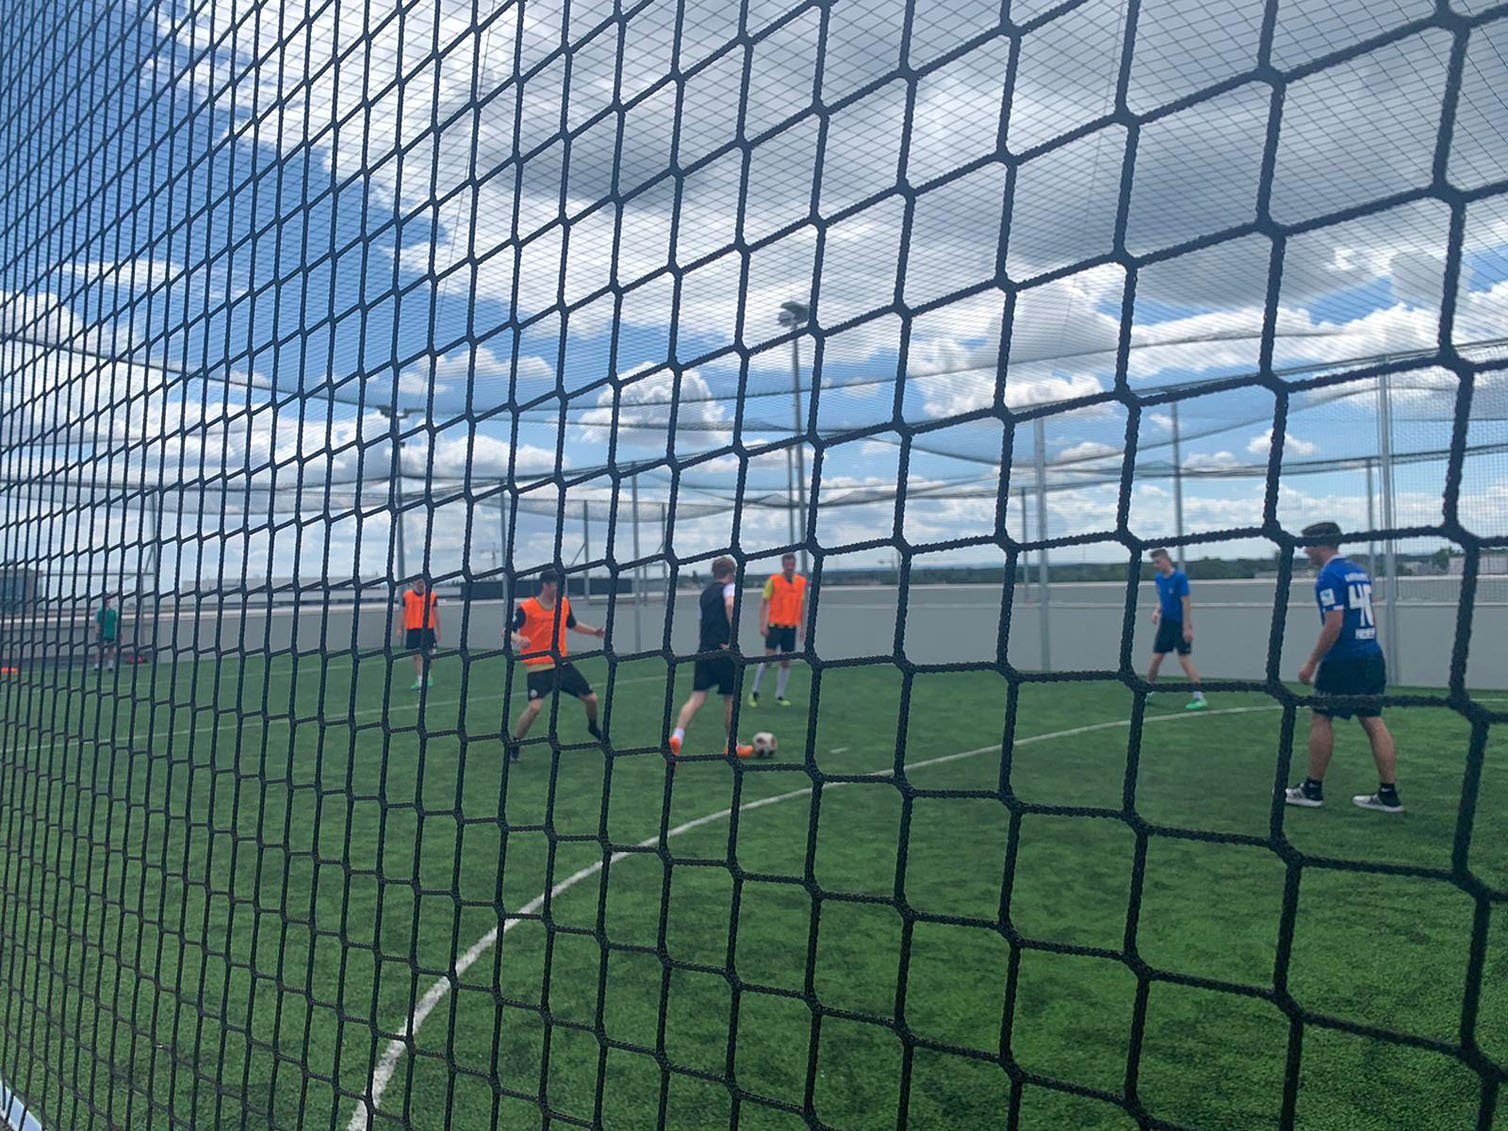 Vollmond Fußball in der Soccer-Anlage "Andi kickt" in der Seestadt Aspern